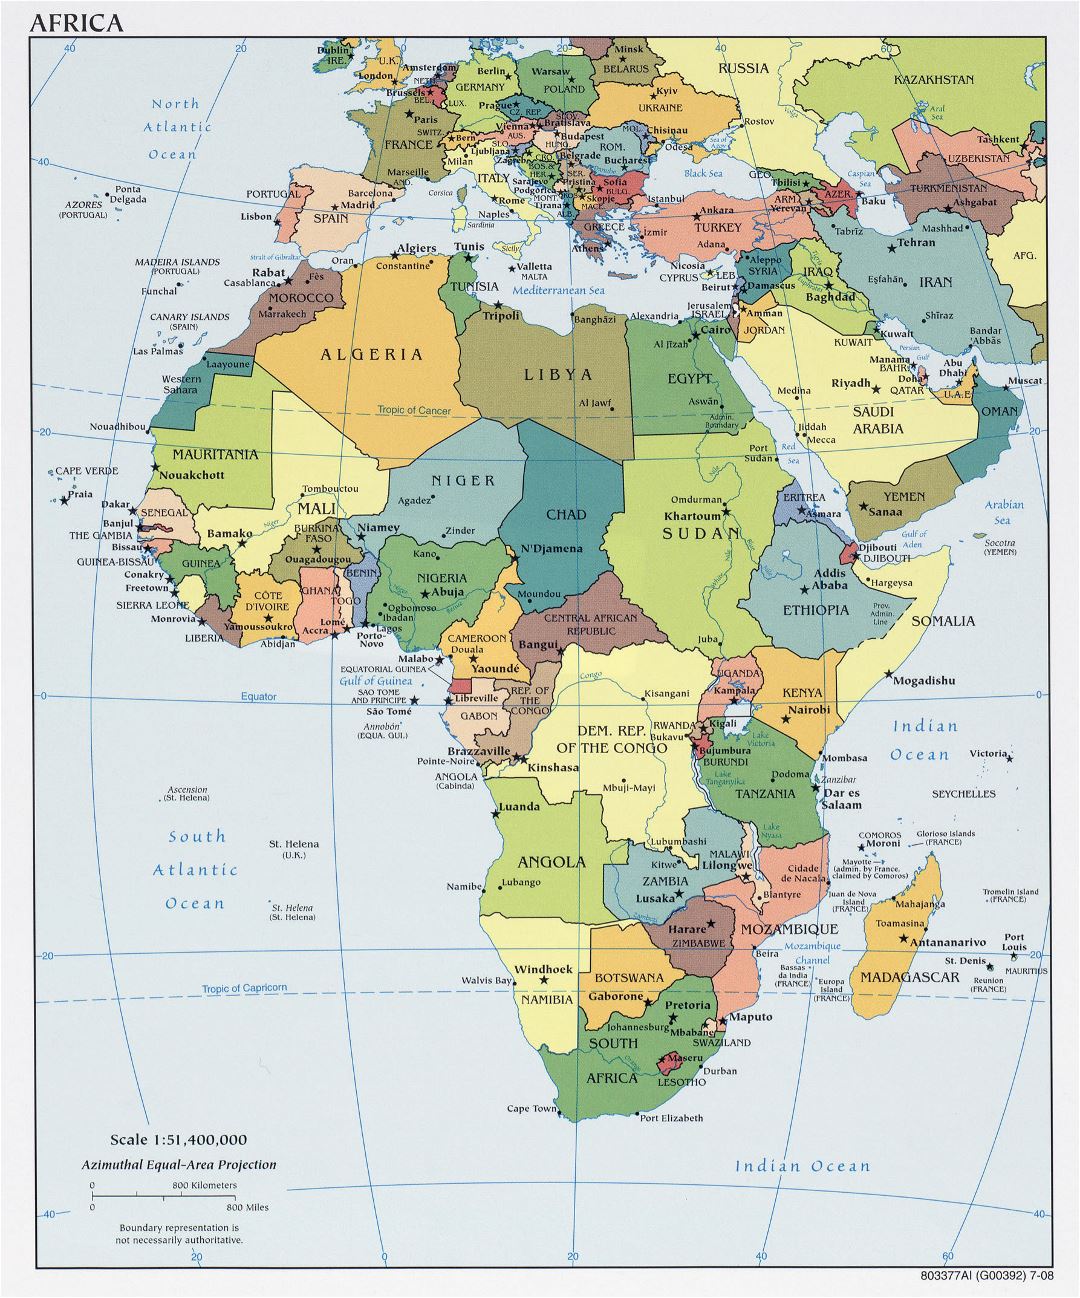 Mapa político grande de África con las principales ciudades y capitales - 2008